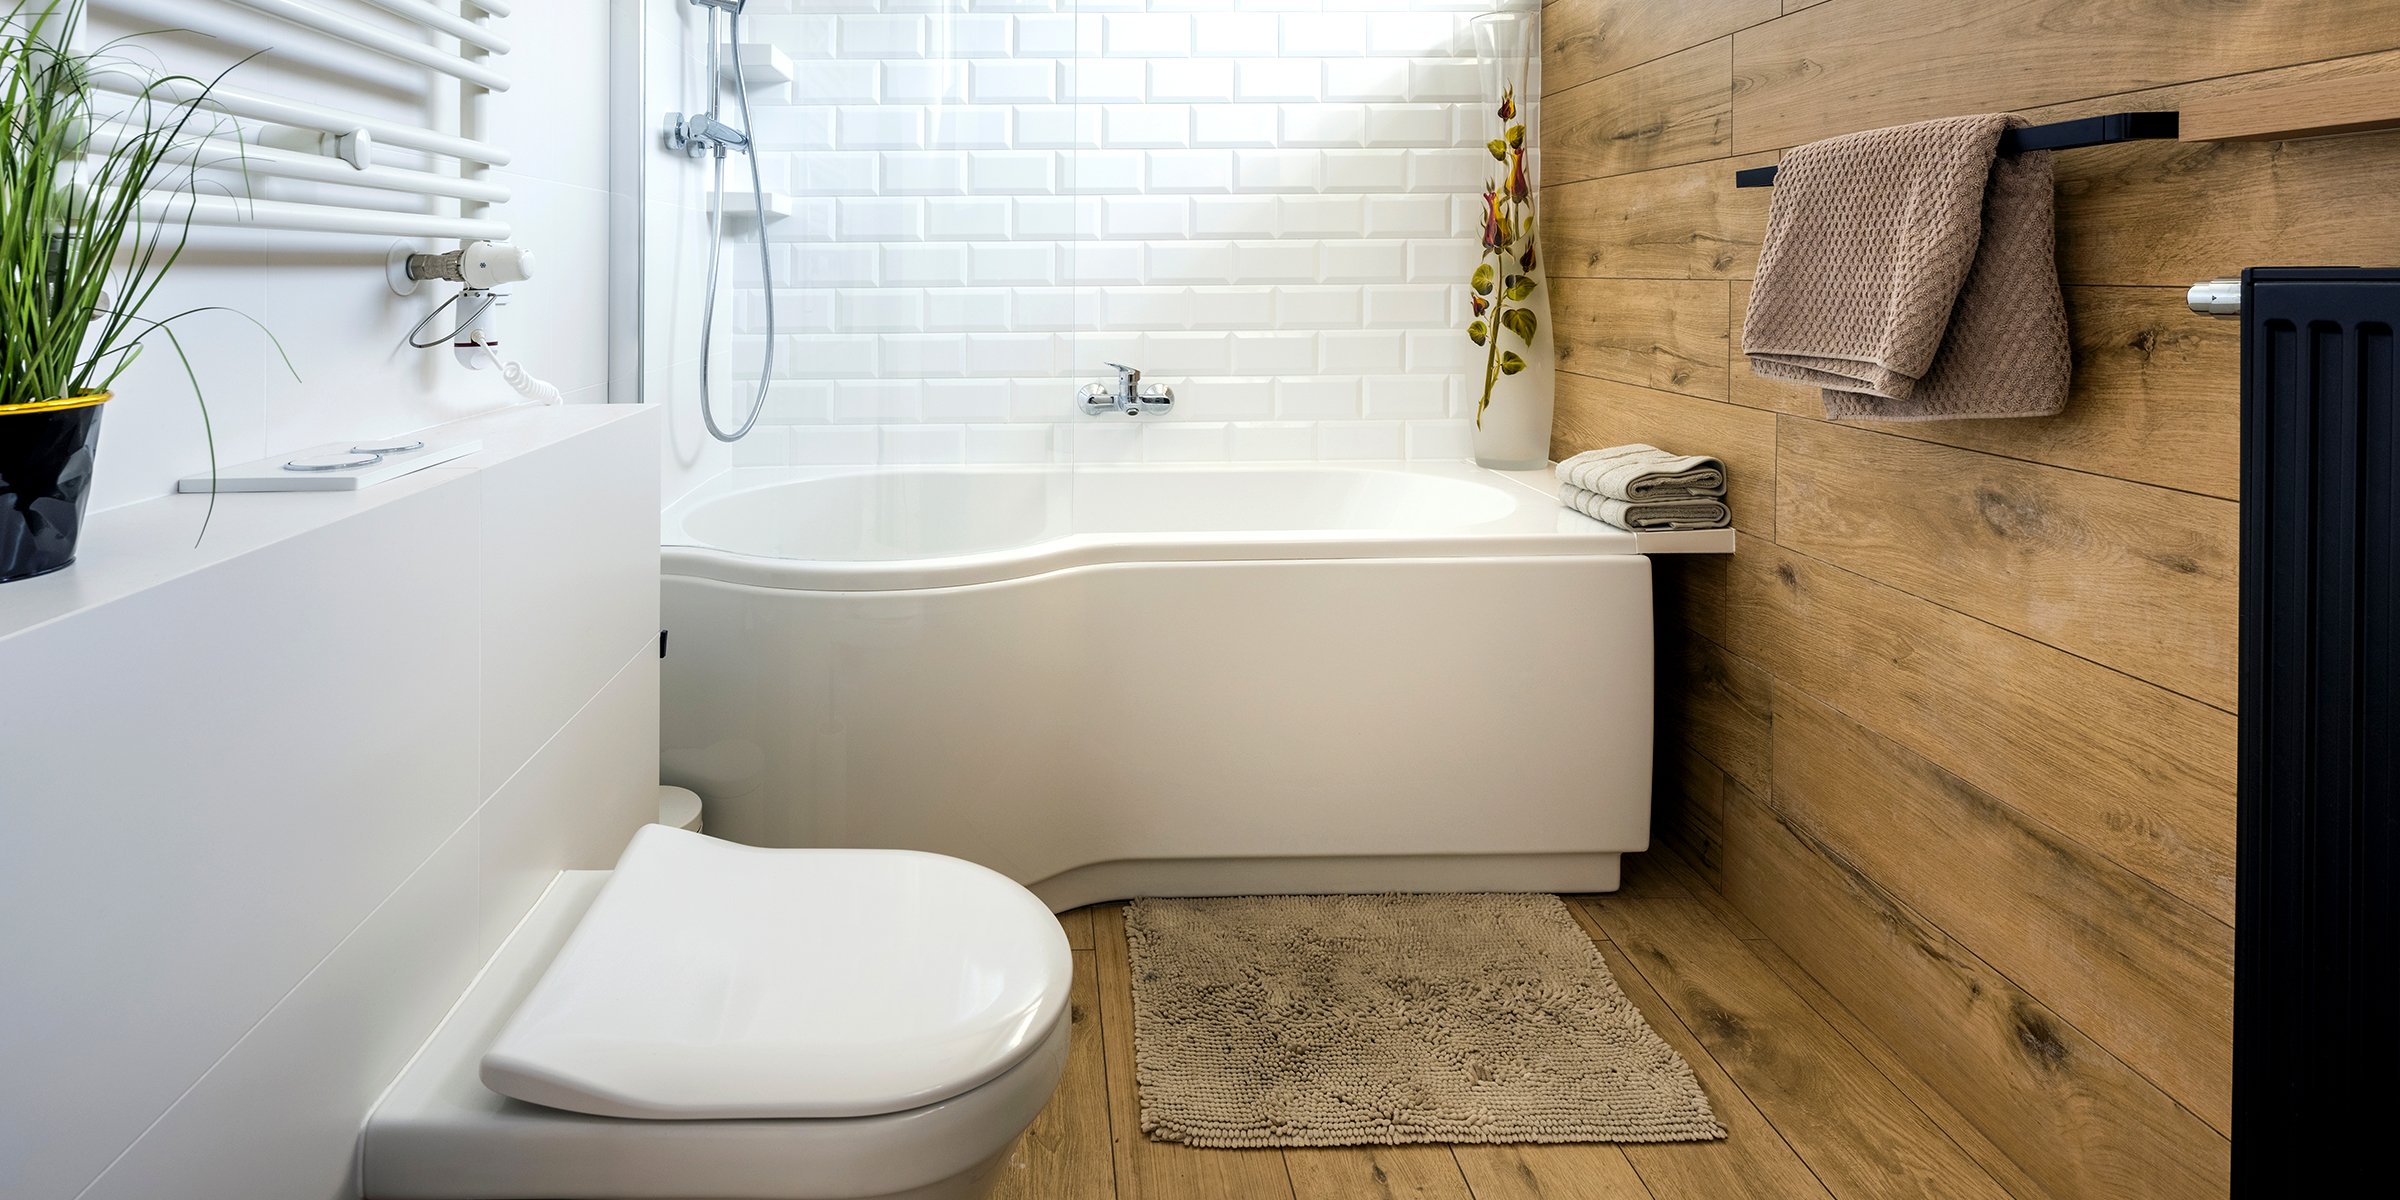 A fancy bathroom | Source: Shutterstock